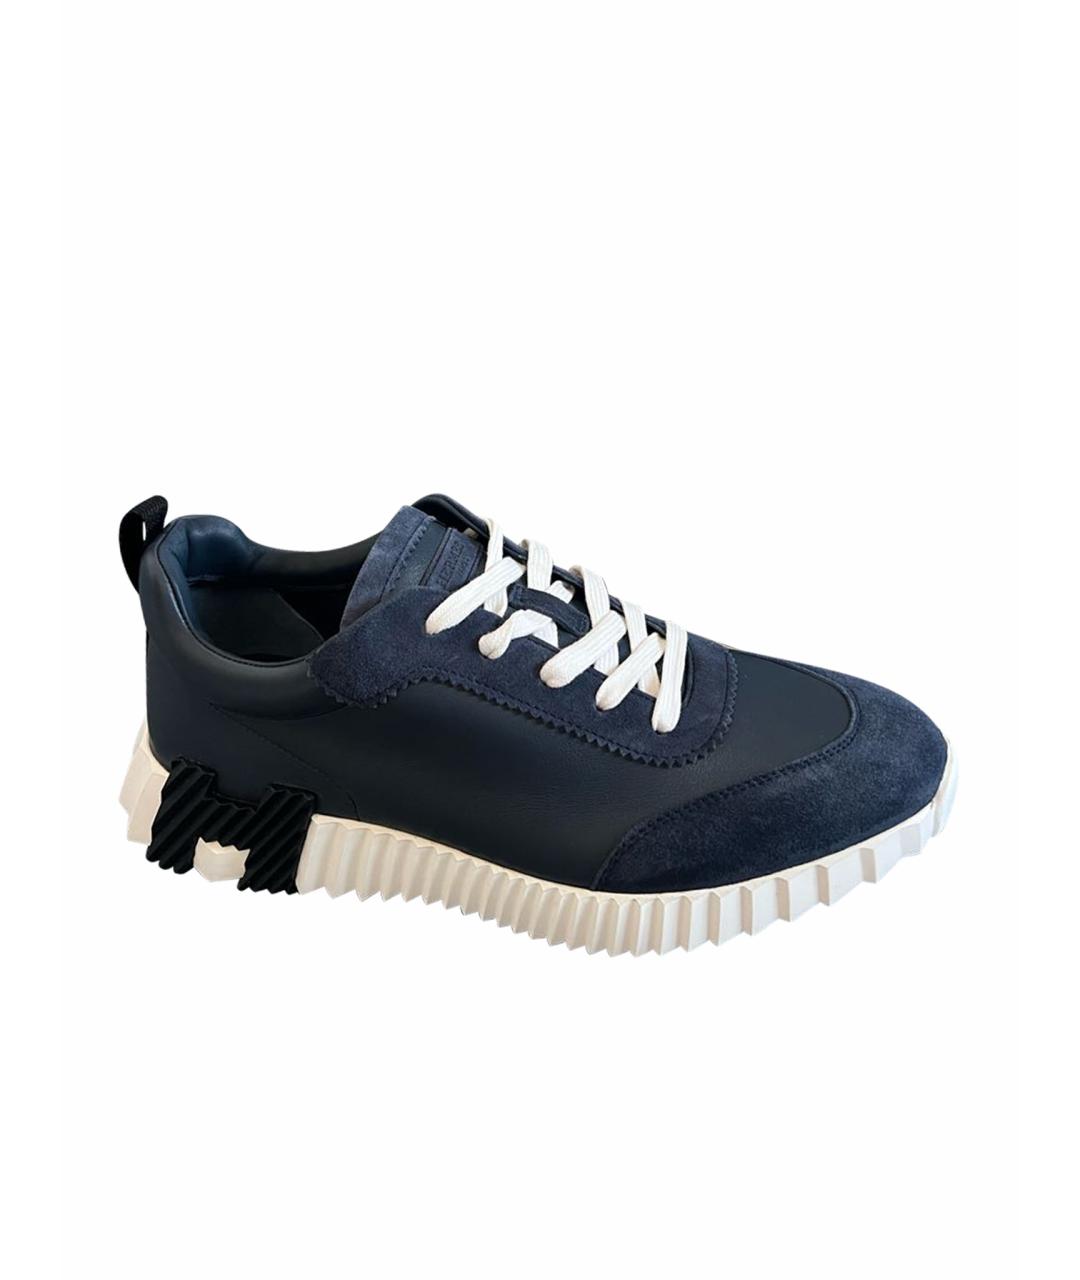 HERMES PRE-OWNED Темно-синие кожаные низкие кроссовки / кеды, фото 1